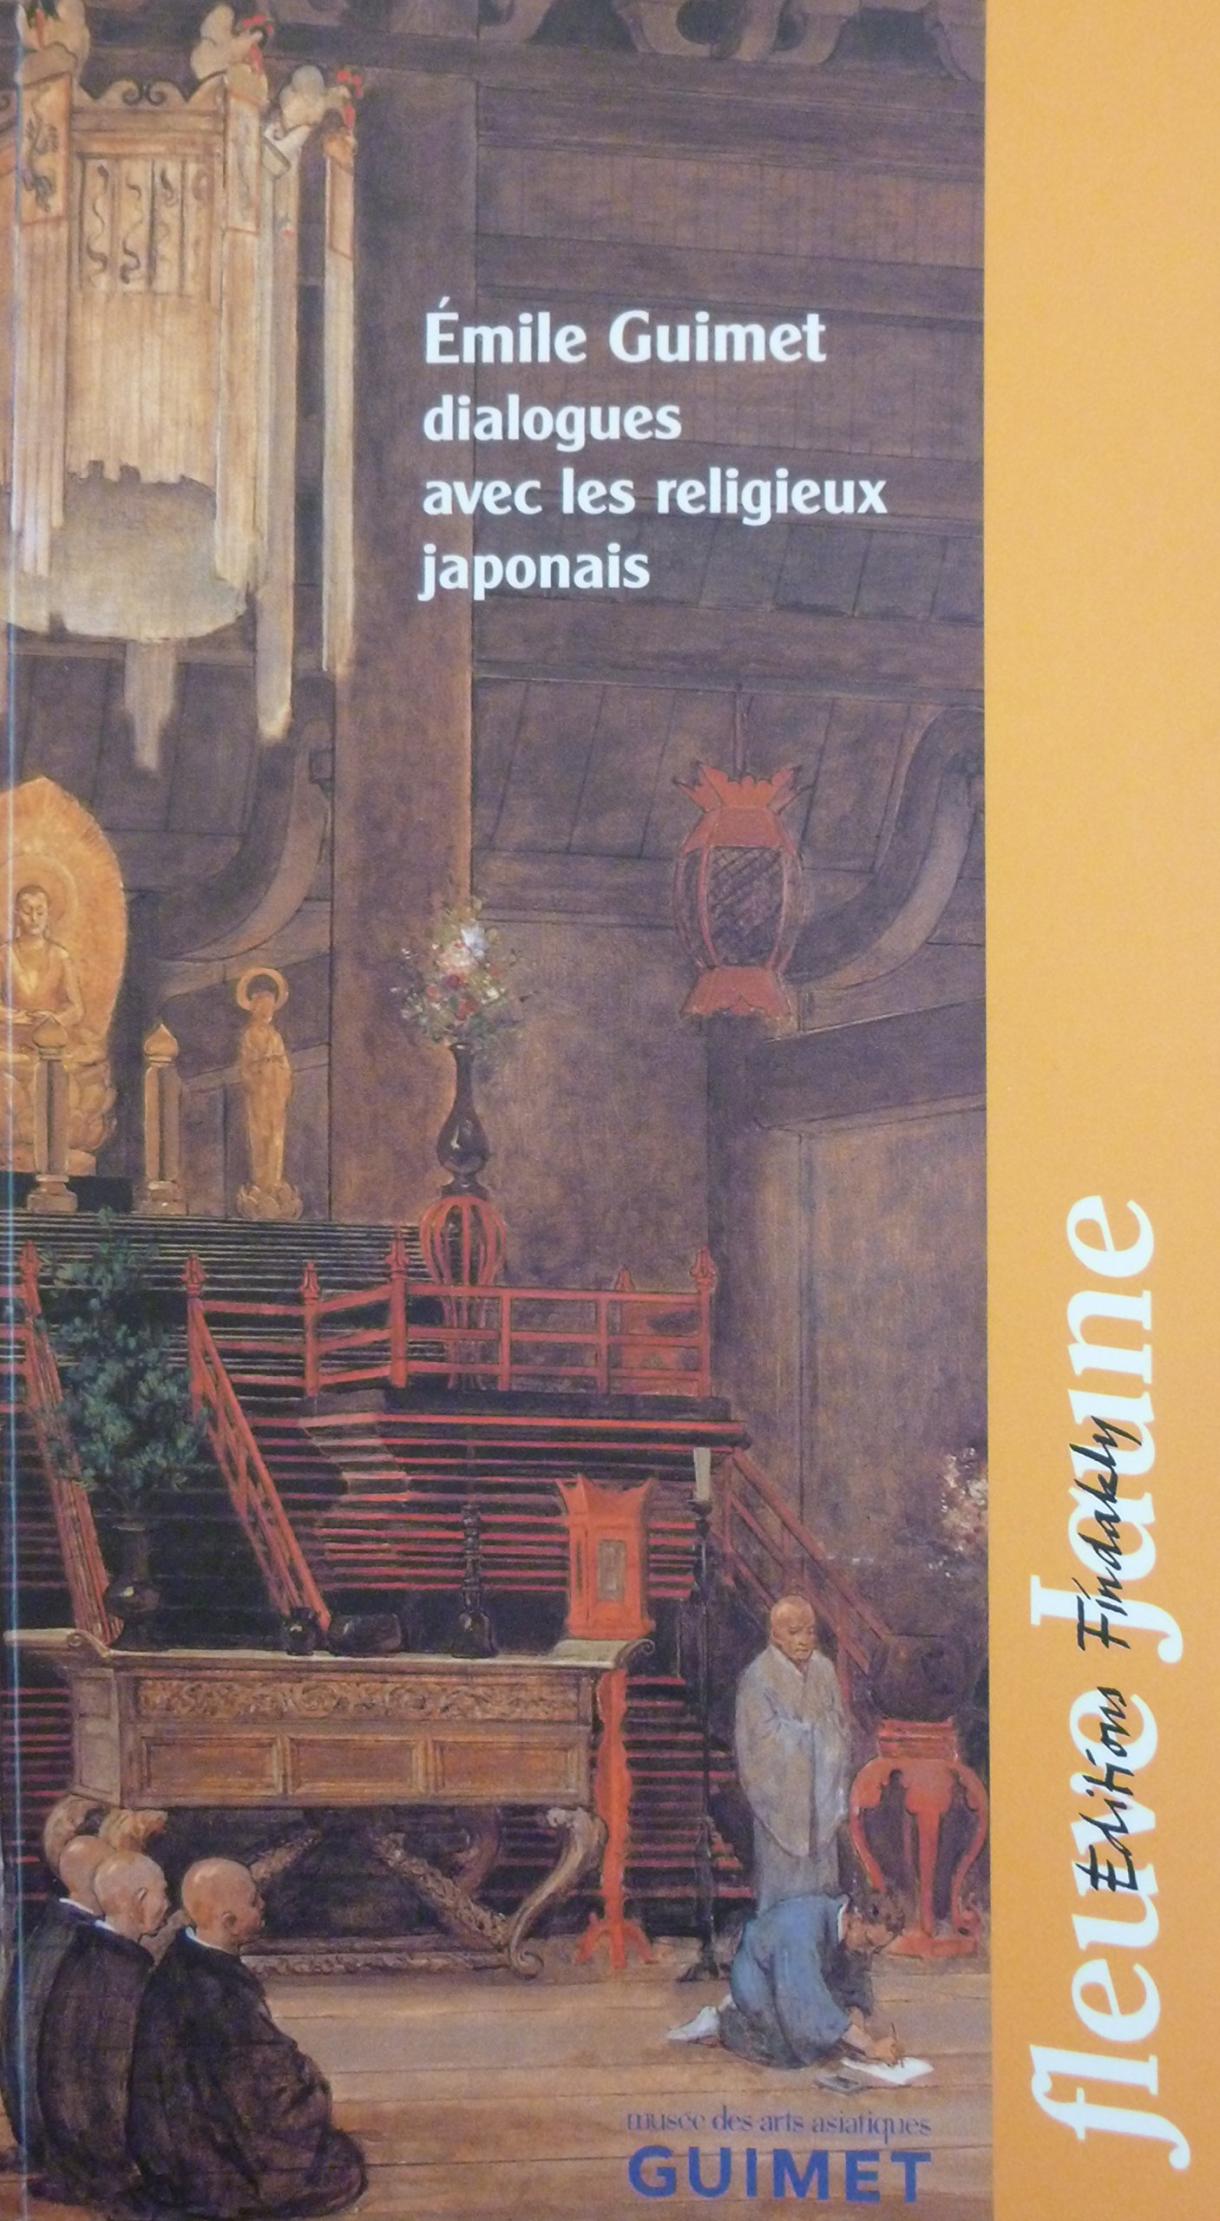 Émile Guimet : dialogues avec les religieux japonais